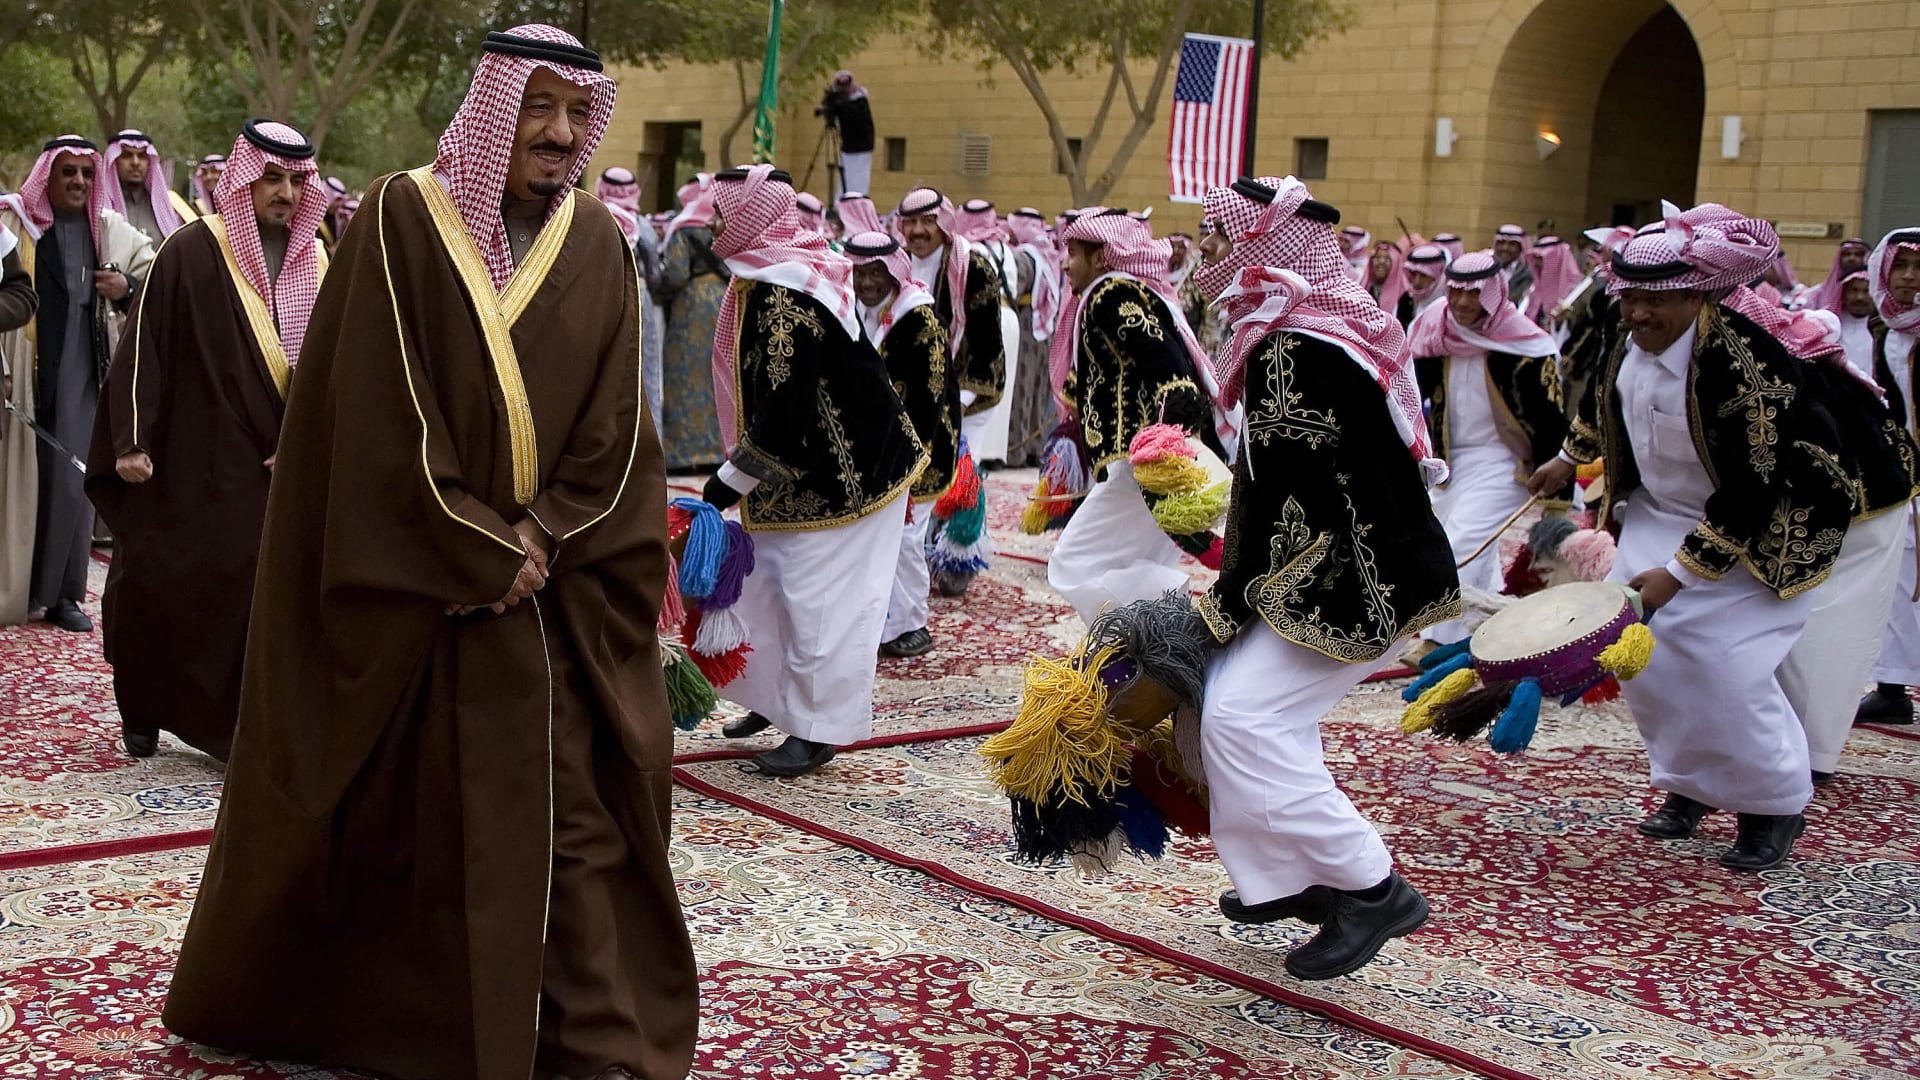 رد خبير اقتصادي غربي على "متى ستصبح السعودية قوة عظمى حرفيا؟" يثير تفاعلا